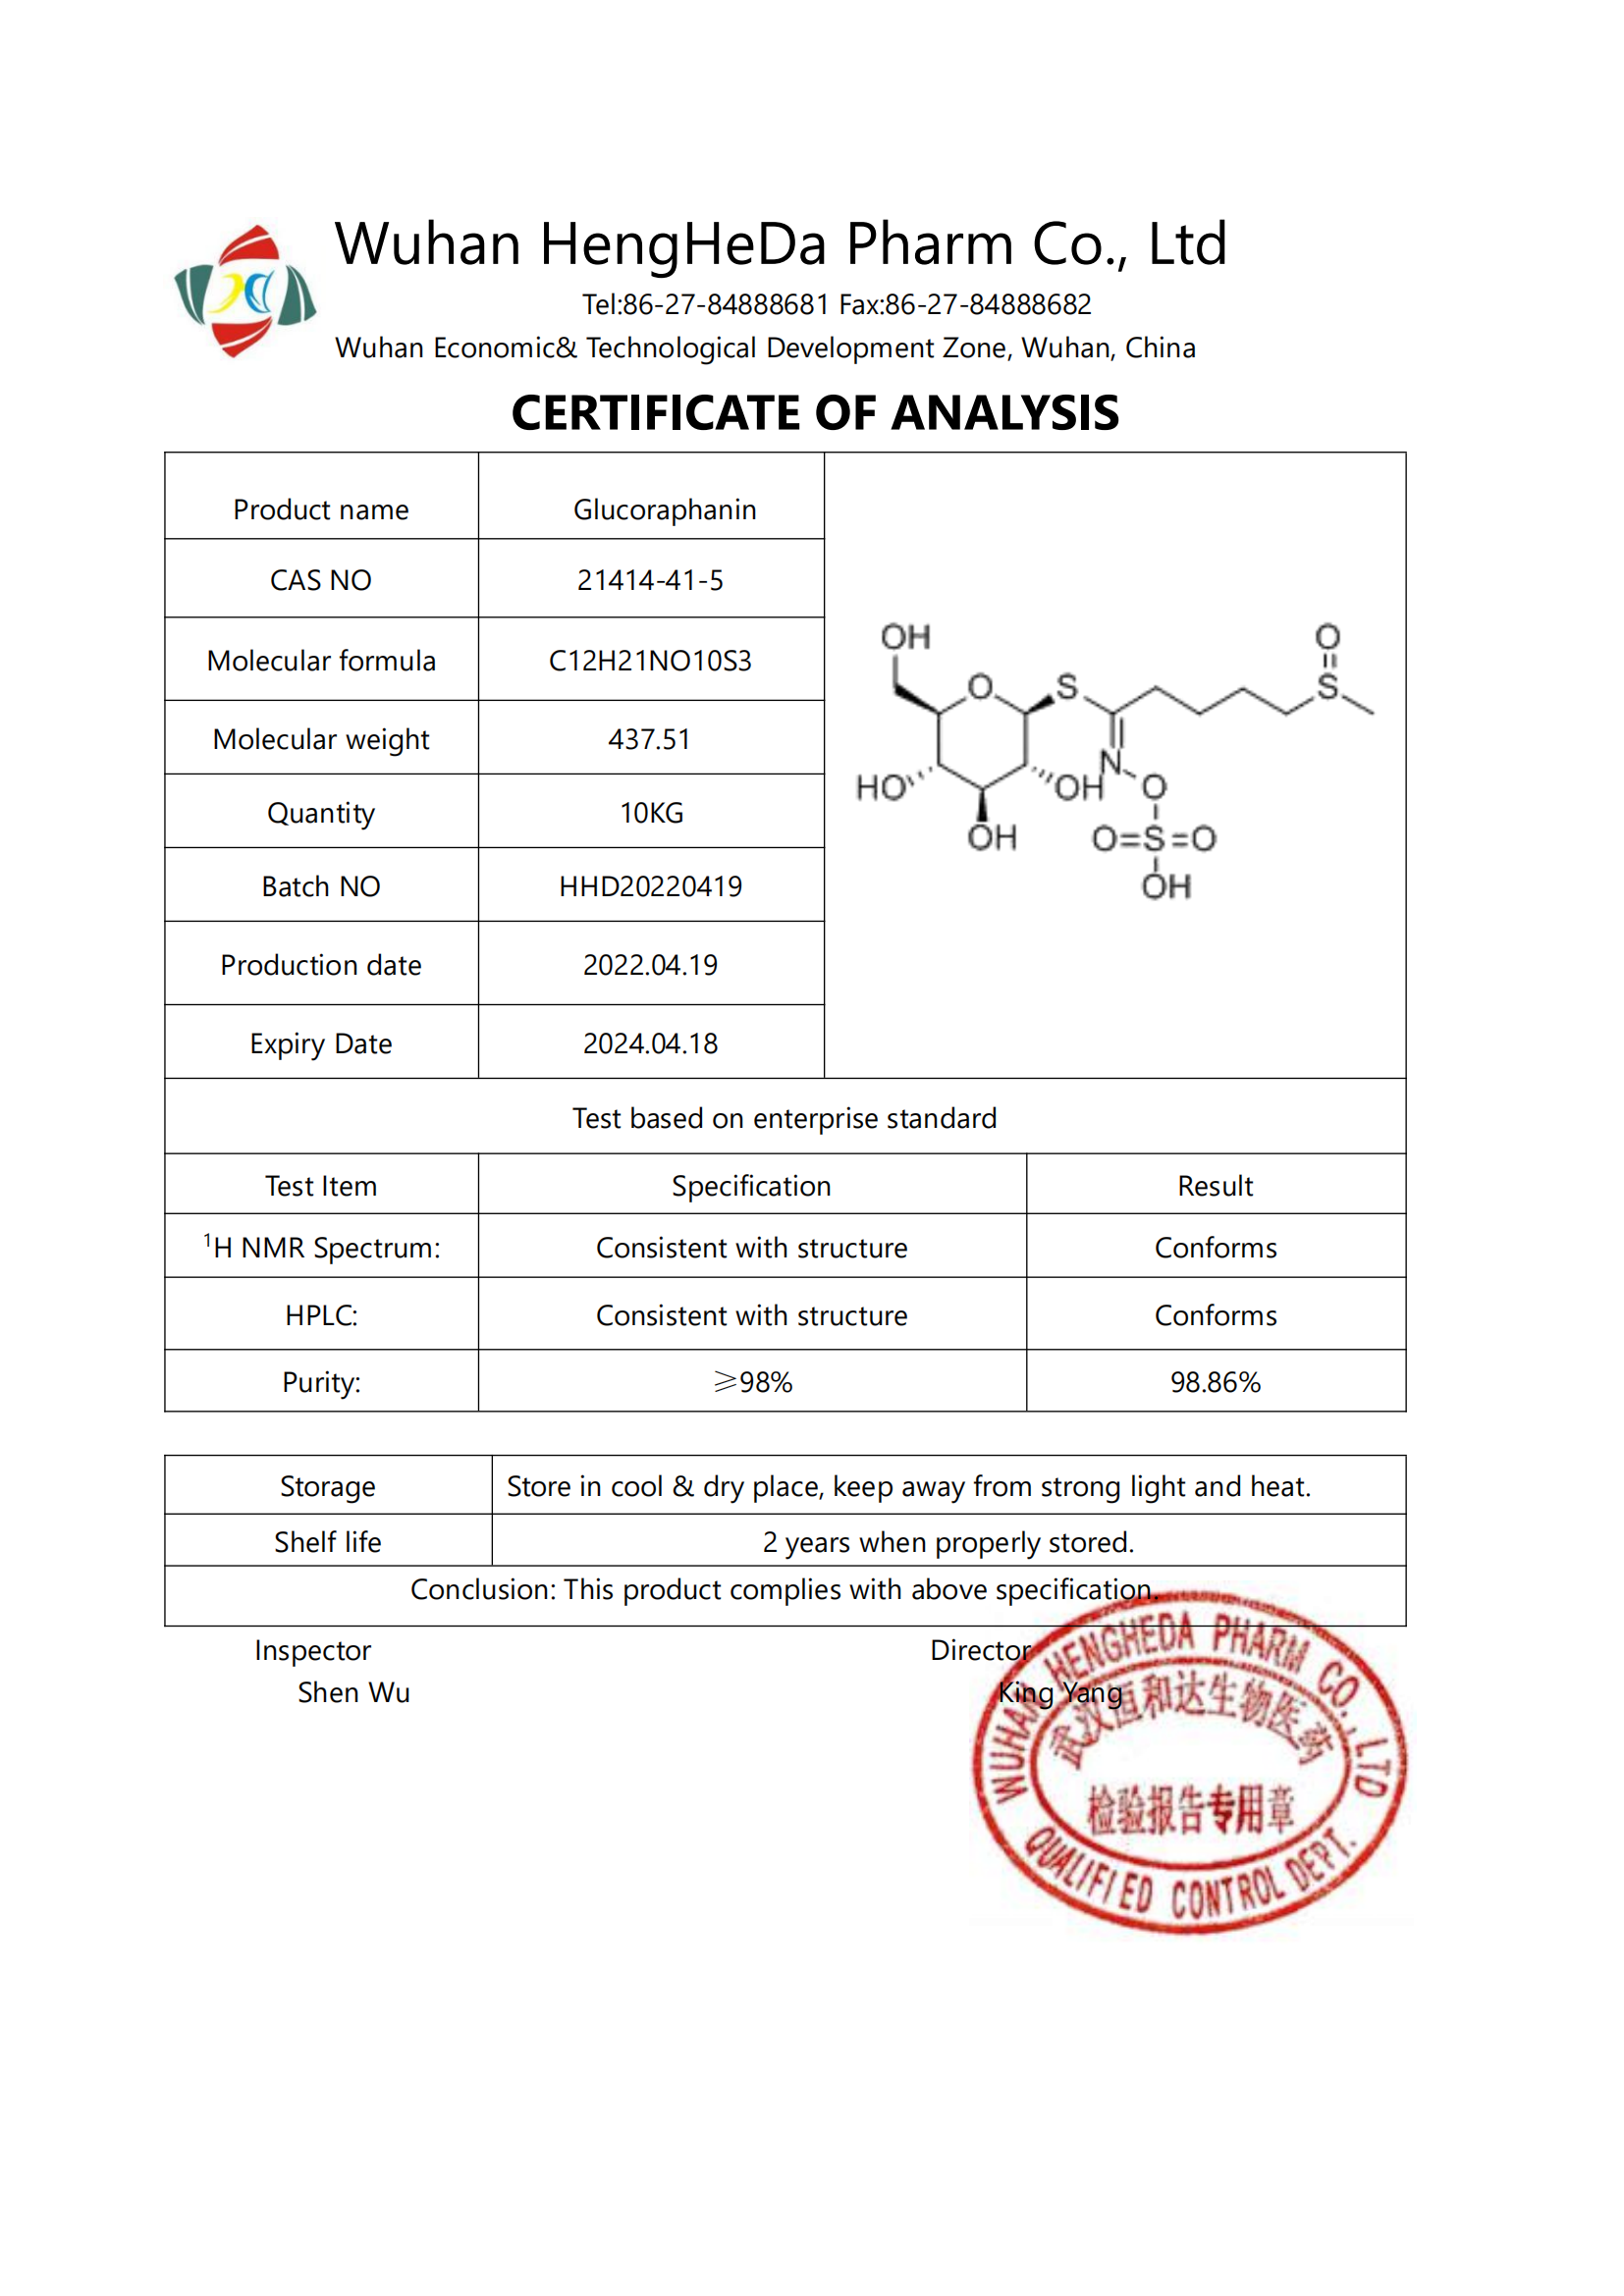 Kup Dostawa fabrycznie wysokiej jakości glukorafaniny CAS 21414-41-5,Dostawa fabrycznie wysokiej jakości glukorafaniny CAS 21414-41-5 Cena,Dostawa fabrycznie wysokiej jakości glukorafaniny CAS 21414-41-5 marki,Dostawa fabrycznie wysokiej jakości glukorafaniny CAS 21414-41-5 Producent,Dostawa fabrycznie wysokiej jakości glukorafaniny CAS 21414-41-5 Cytaty,Dostawa fabrycznie wysokiej jakości glukorafaniny CAS 21414-41-5 spółka,